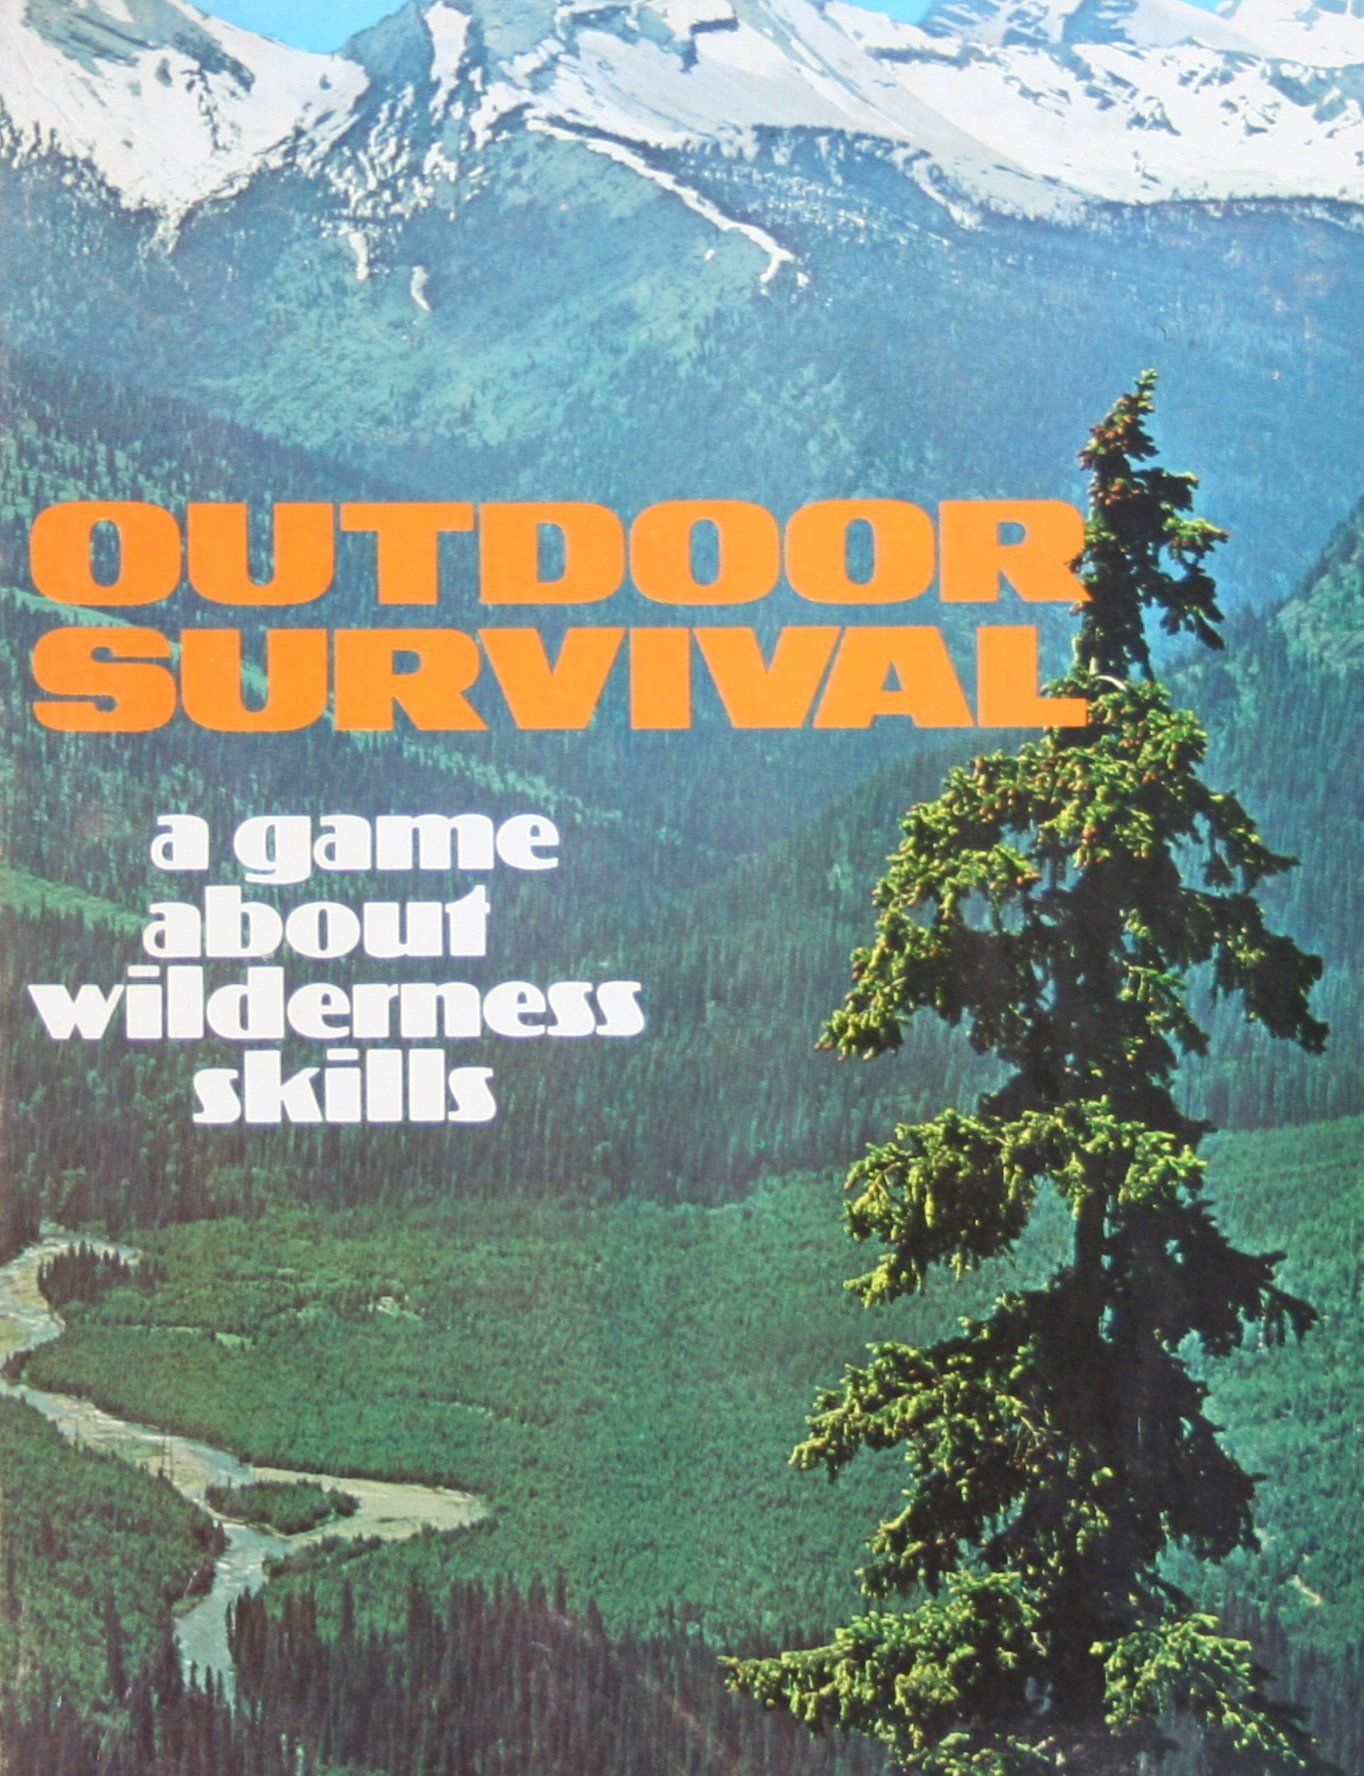 Outdoor Survival